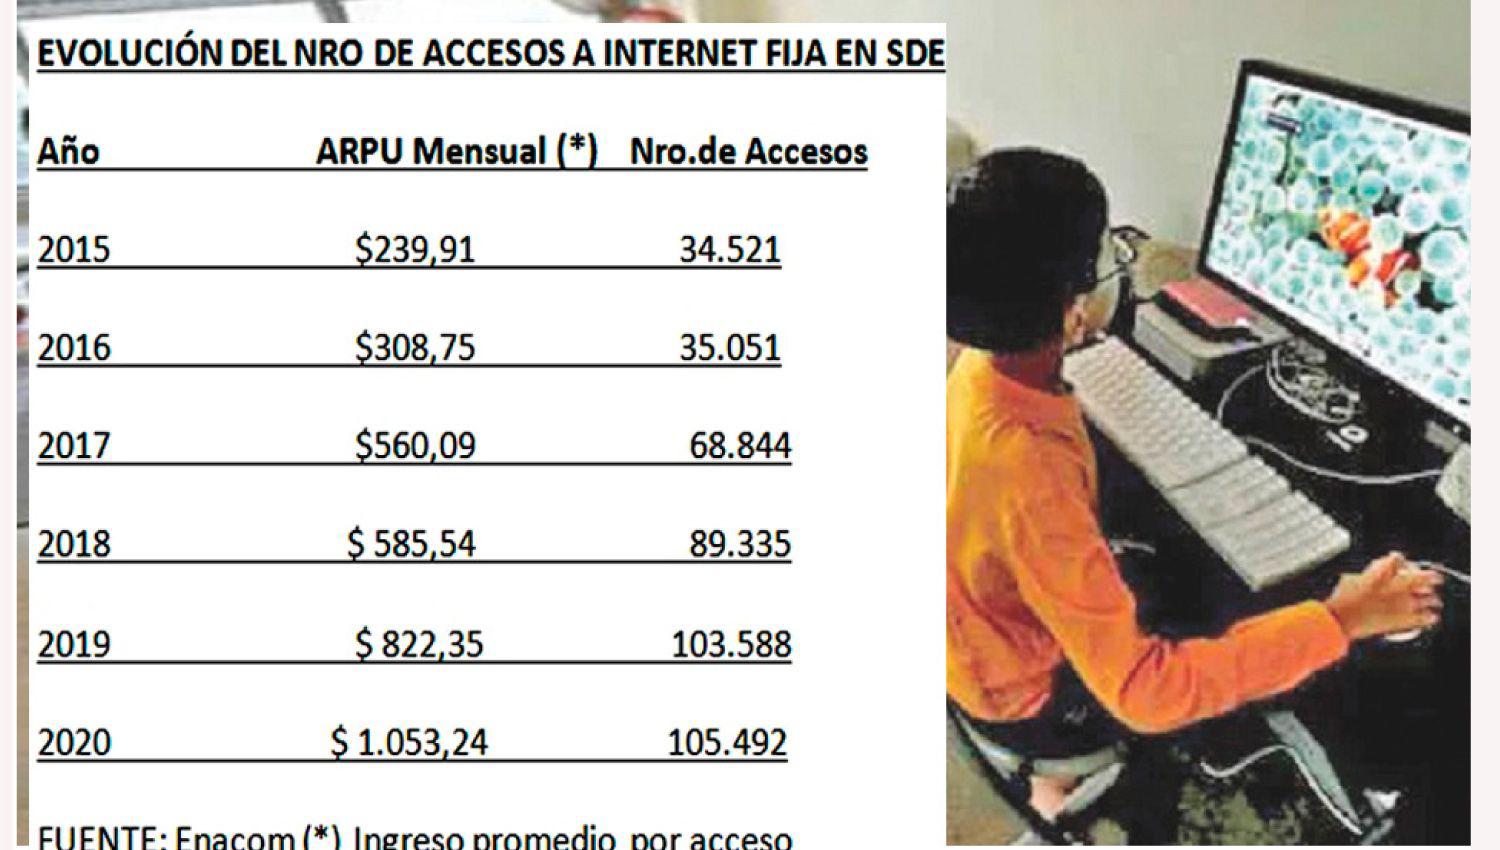 Pese a la crisis se triplicoacute el nuacutemero de conexiones fijas a internet en Santiago